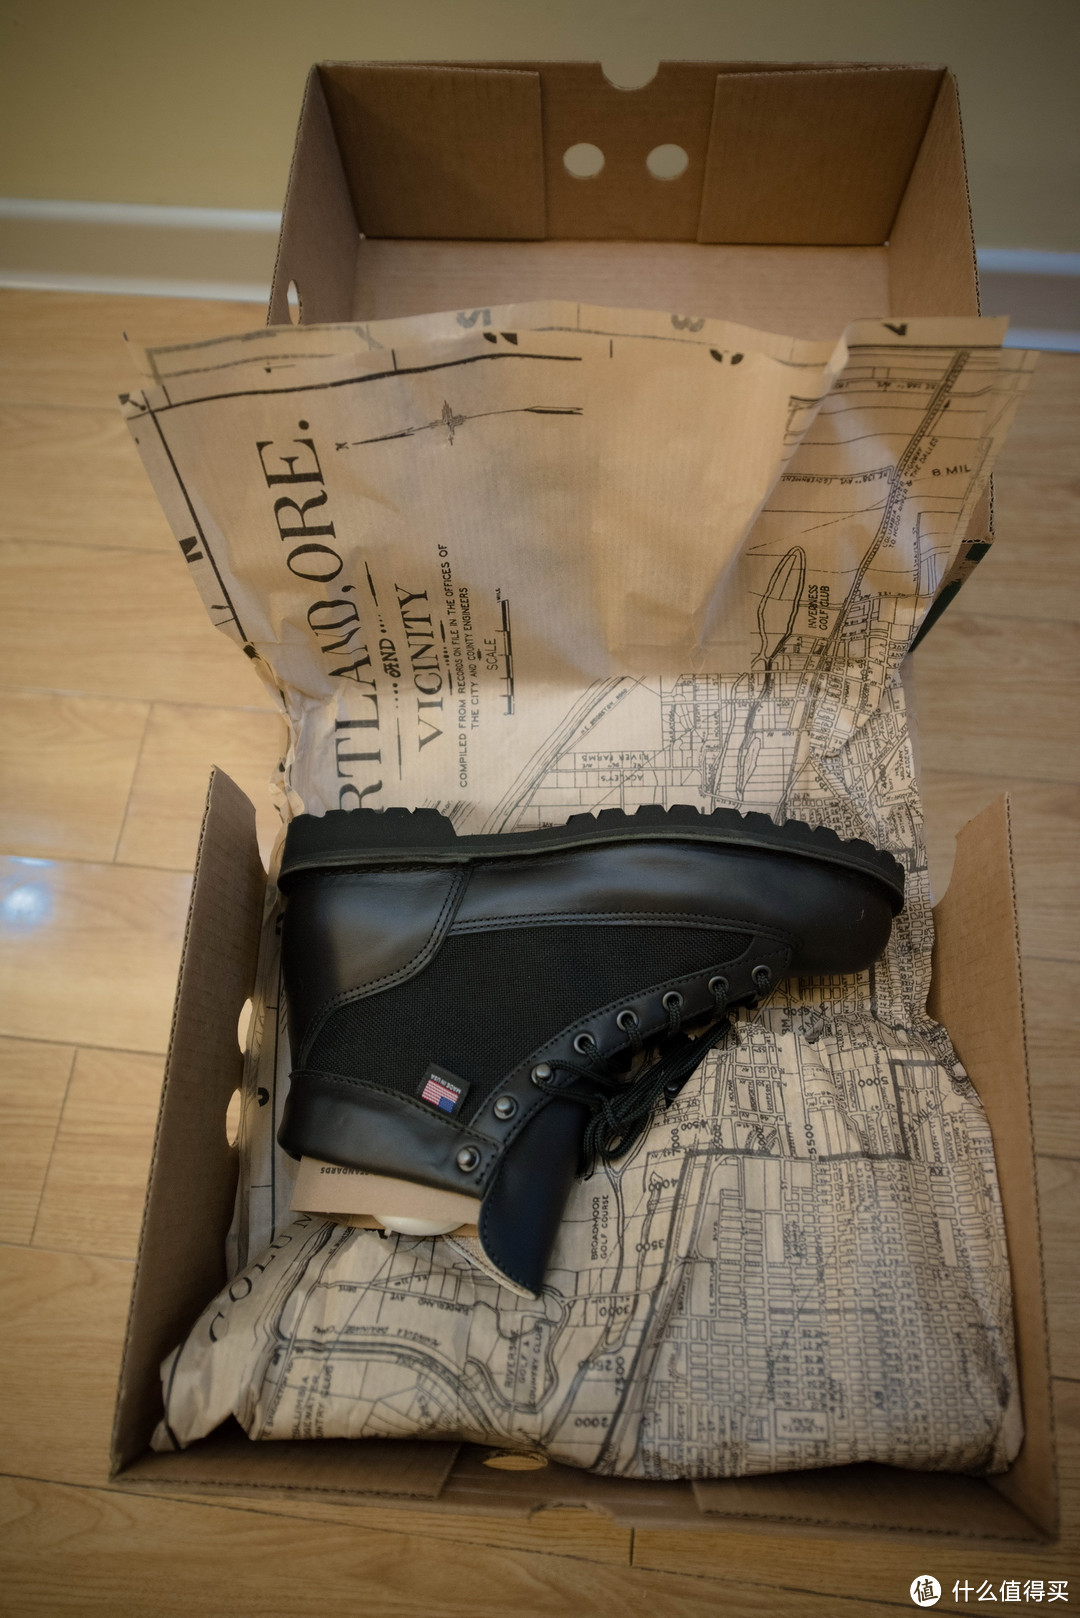 #黑五#在REVOLVE Clothing 购买 Danner Light 靴子， 体验免费的极速美国邮政服务